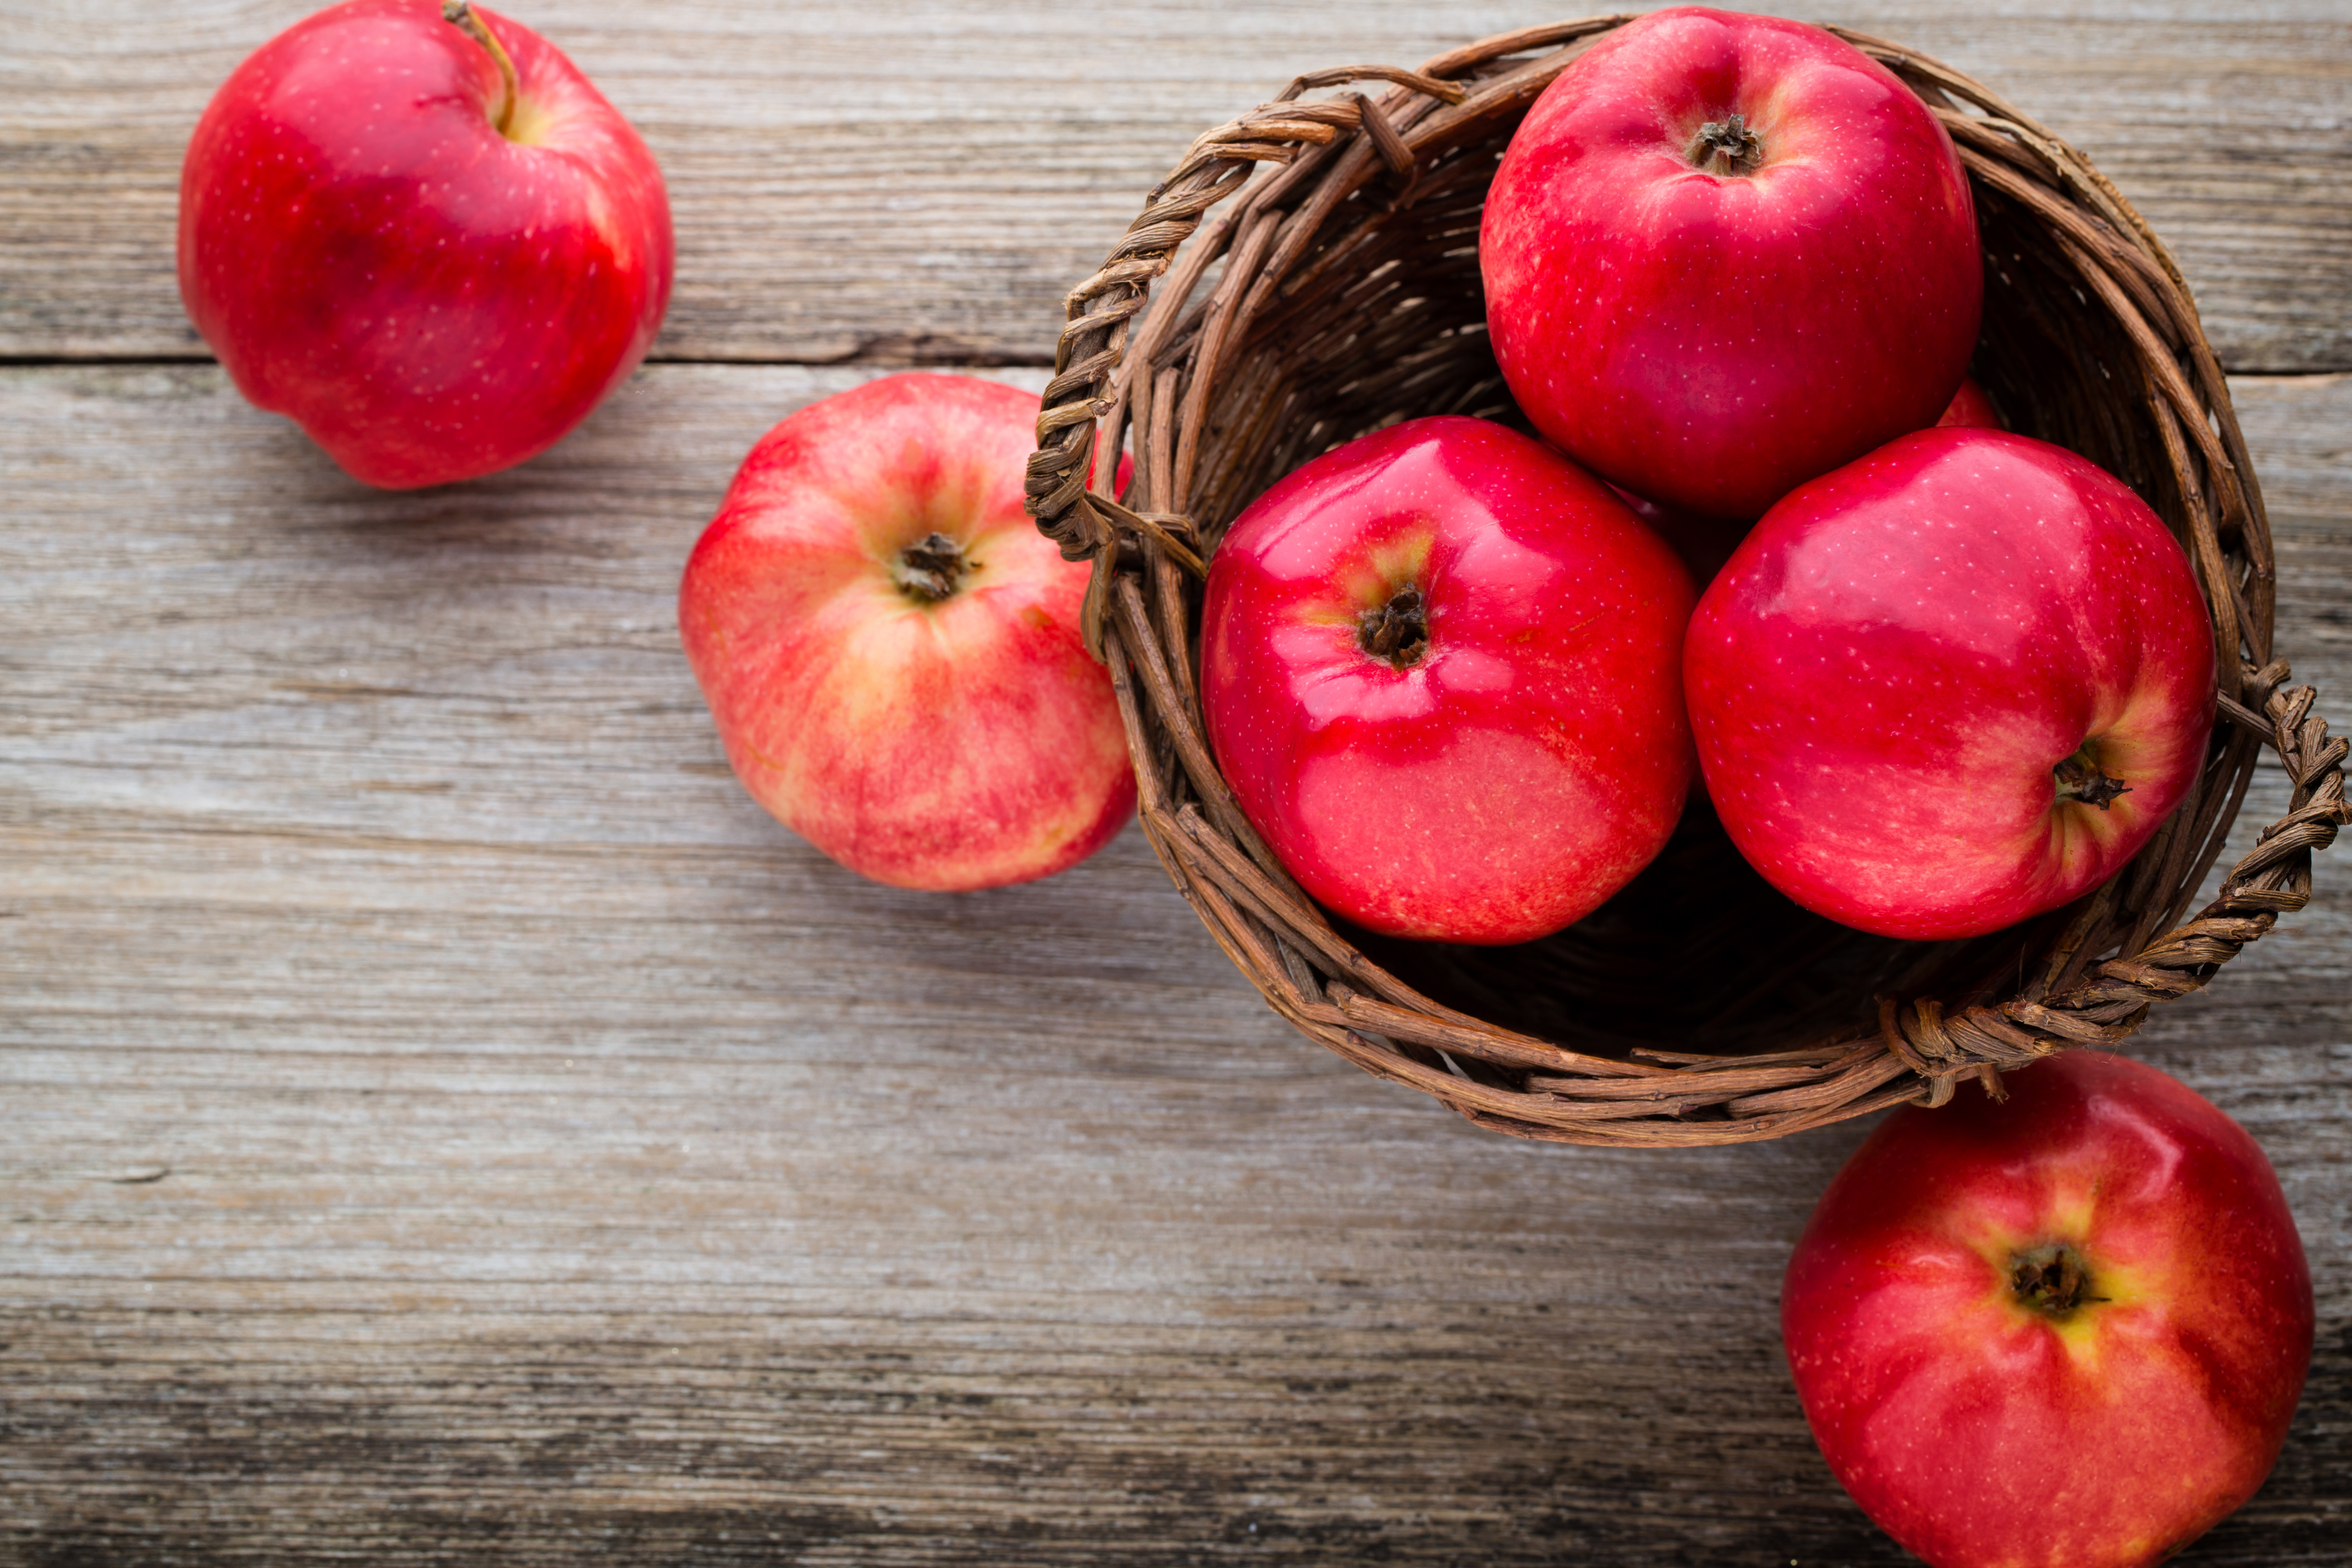 Download mobile wallpaper Fruits, Food, Apple, Fruit, Basket for free.